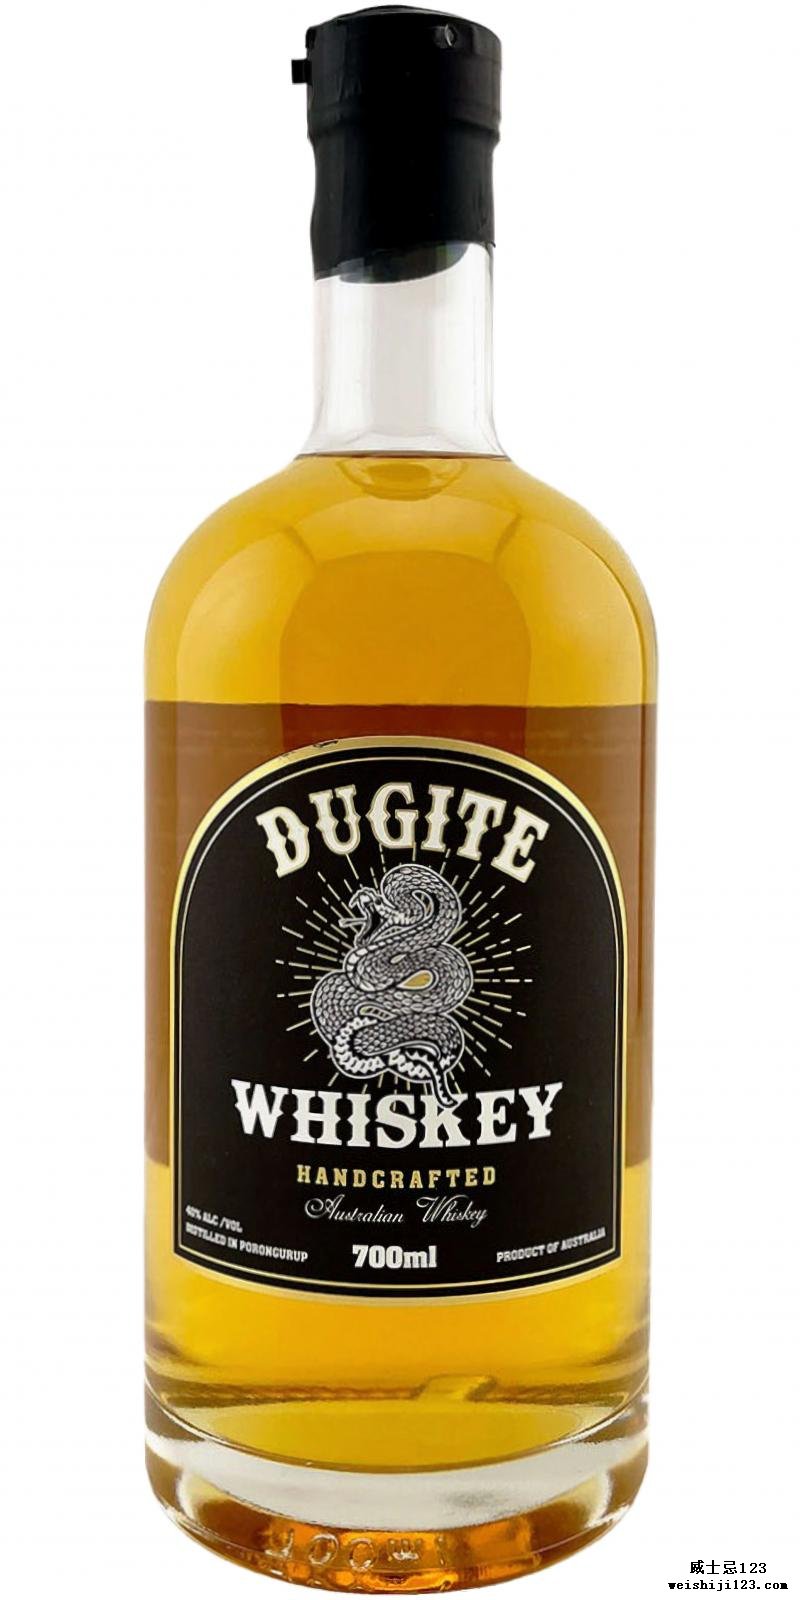 Whiskey Dugite